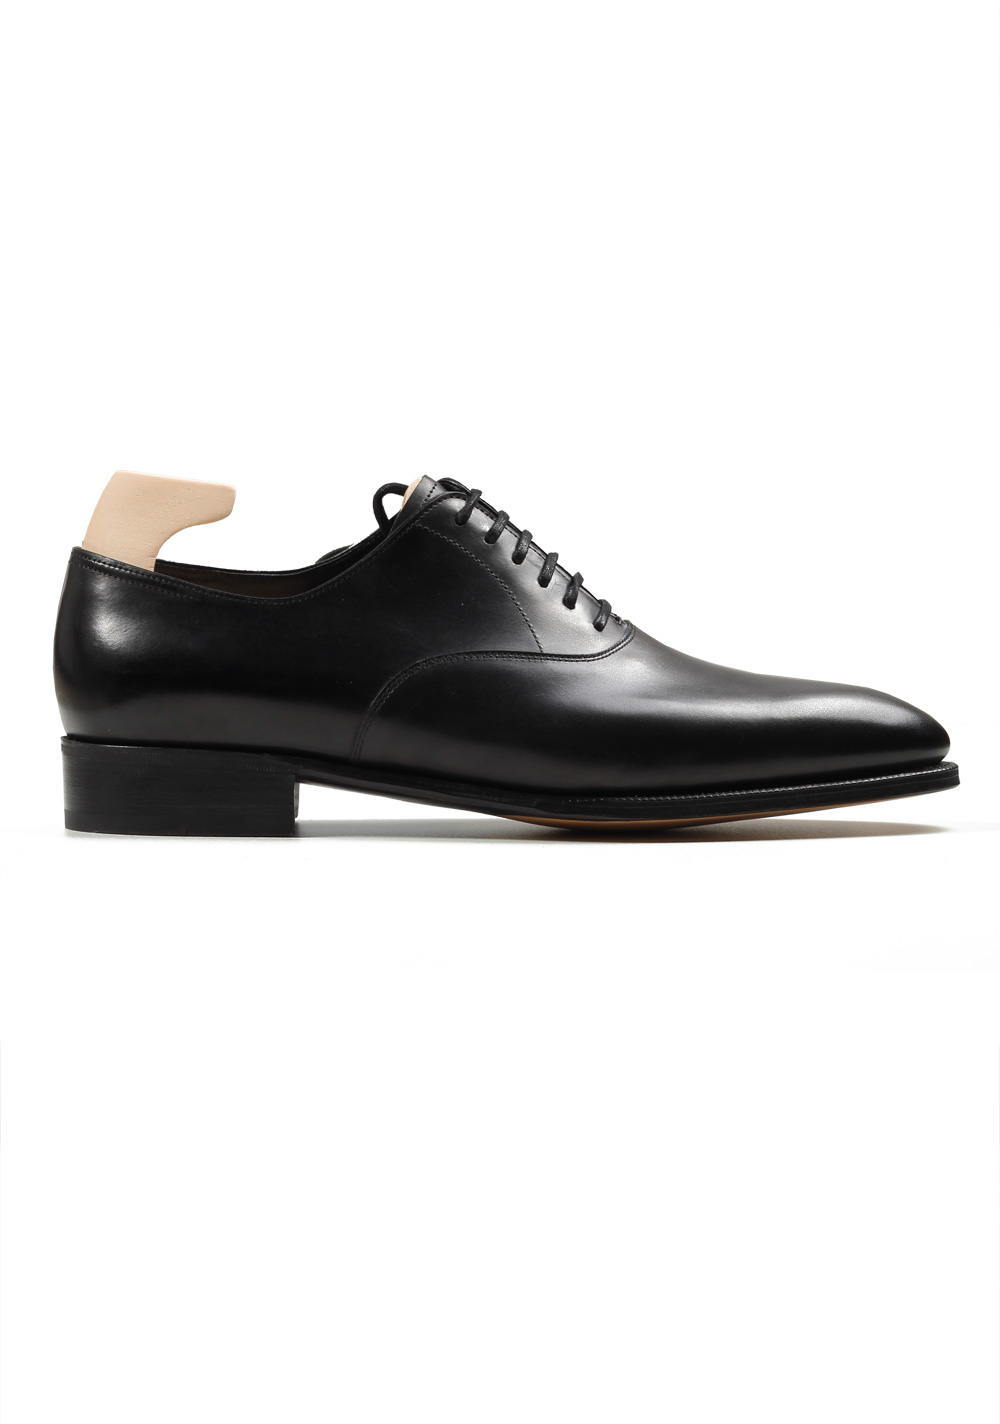 John Lobb Seaton Black Oxford Shoes Size 7 UK / 8 U.S. On 7000 Last | Costume Limité